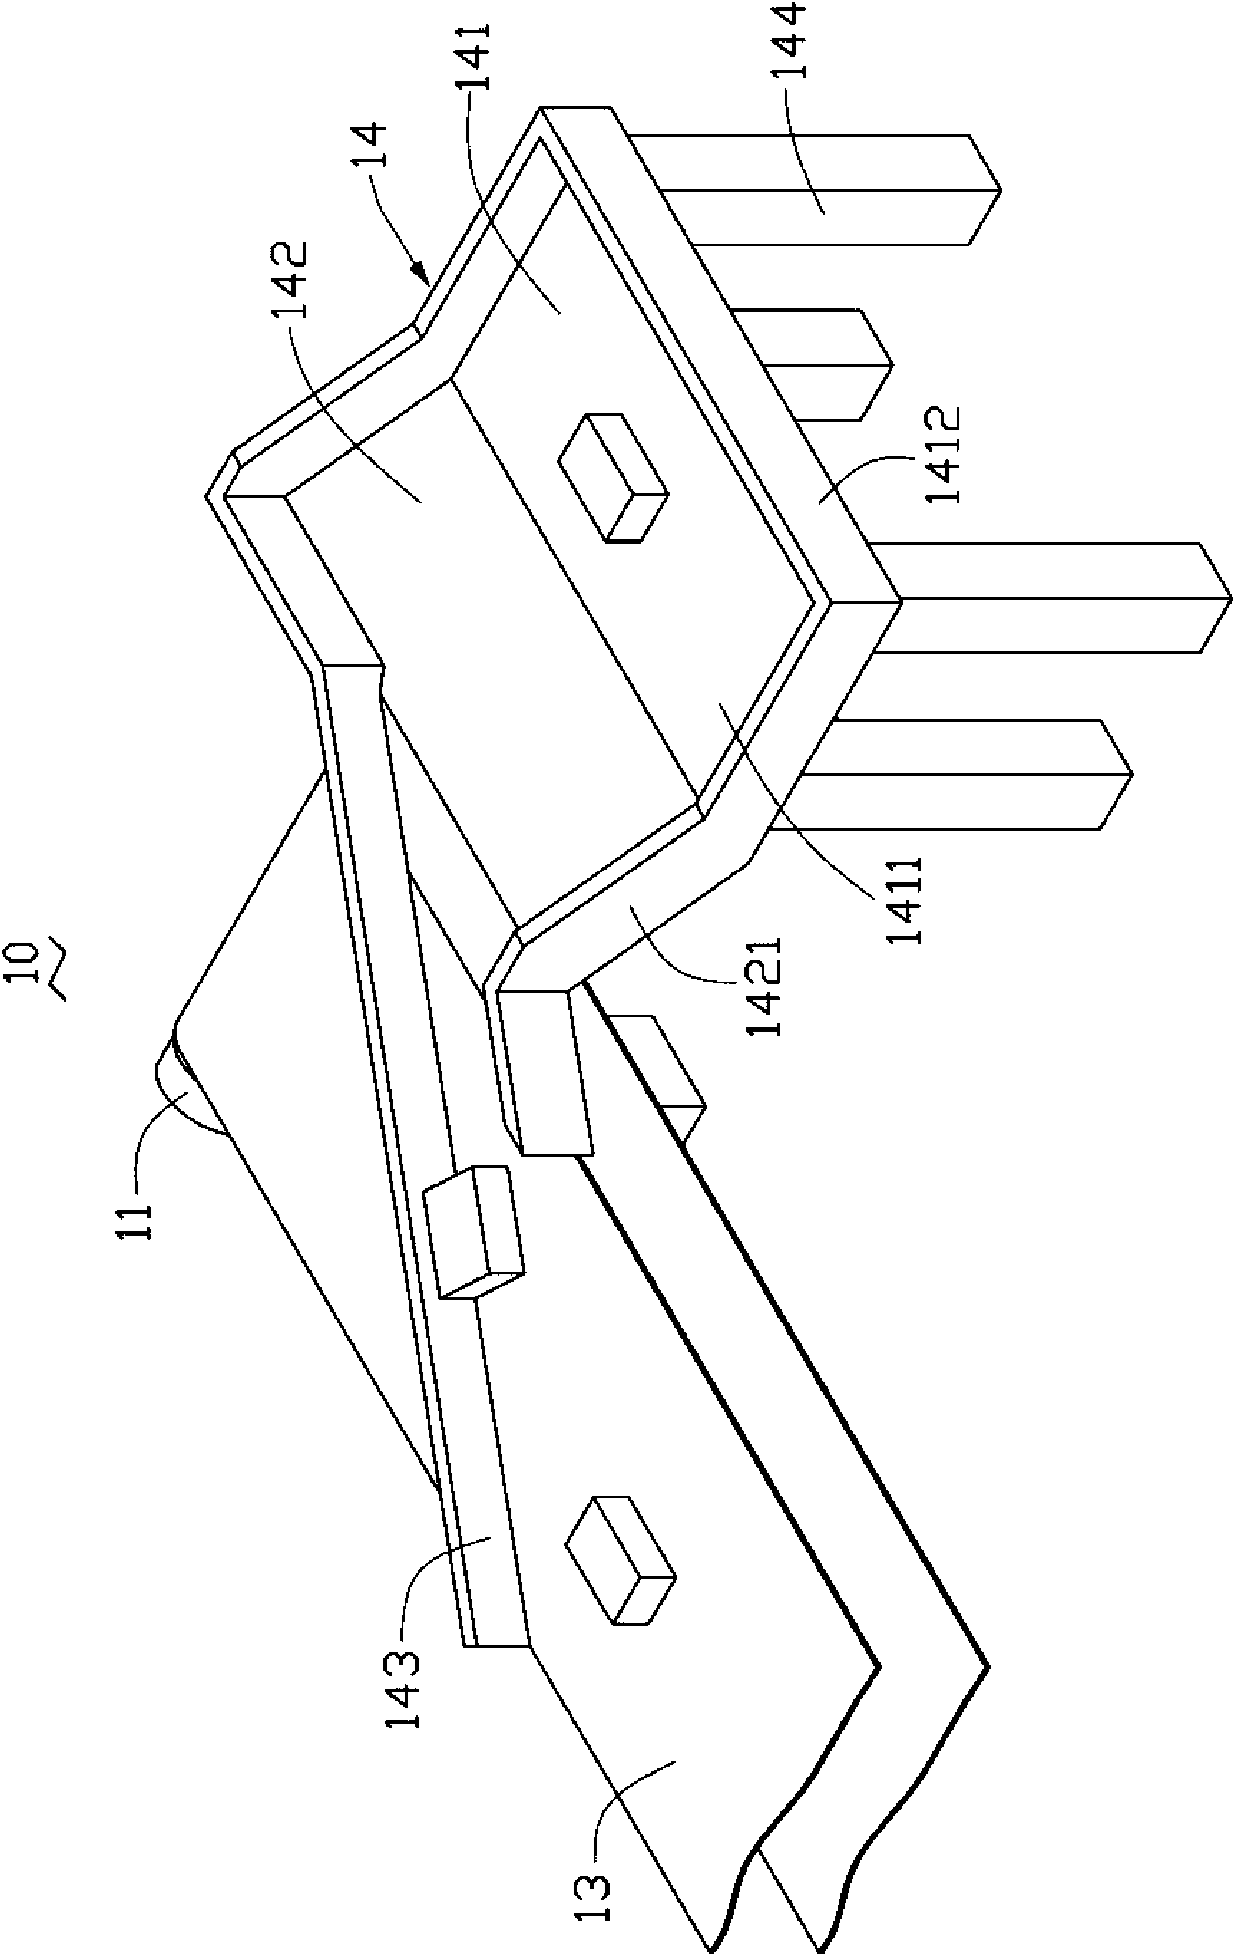 Conveyor device